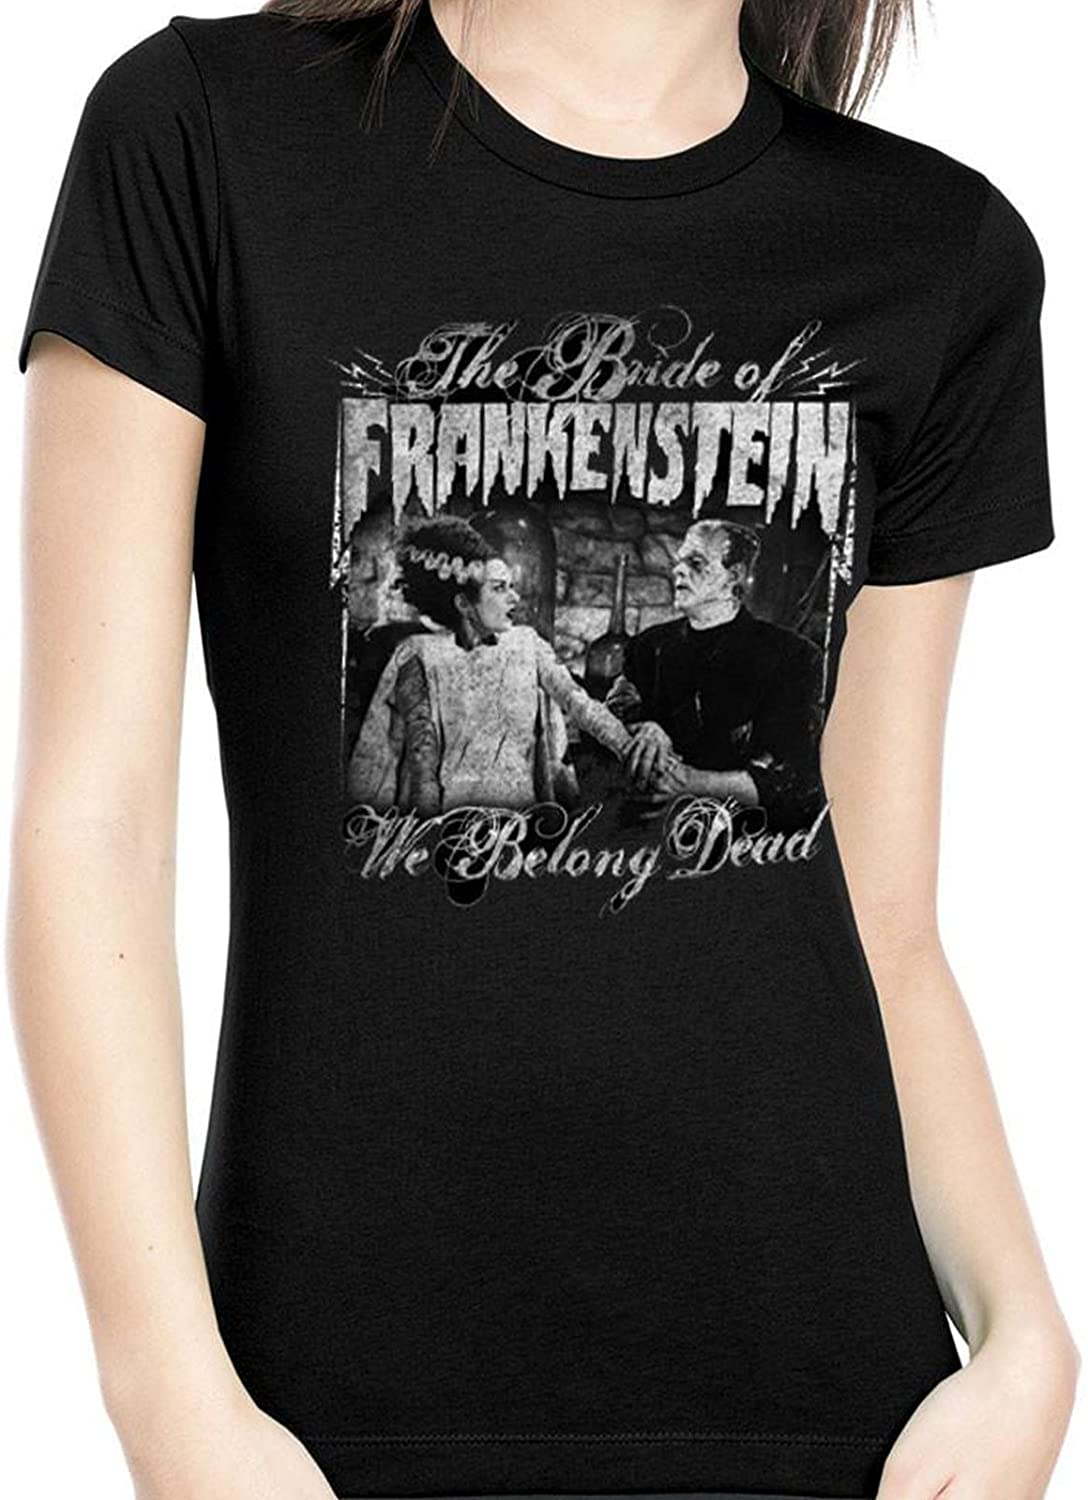 Rock Rebel The Bride of Frankenstein Juniors We Belong Dead Tee T-Shirt